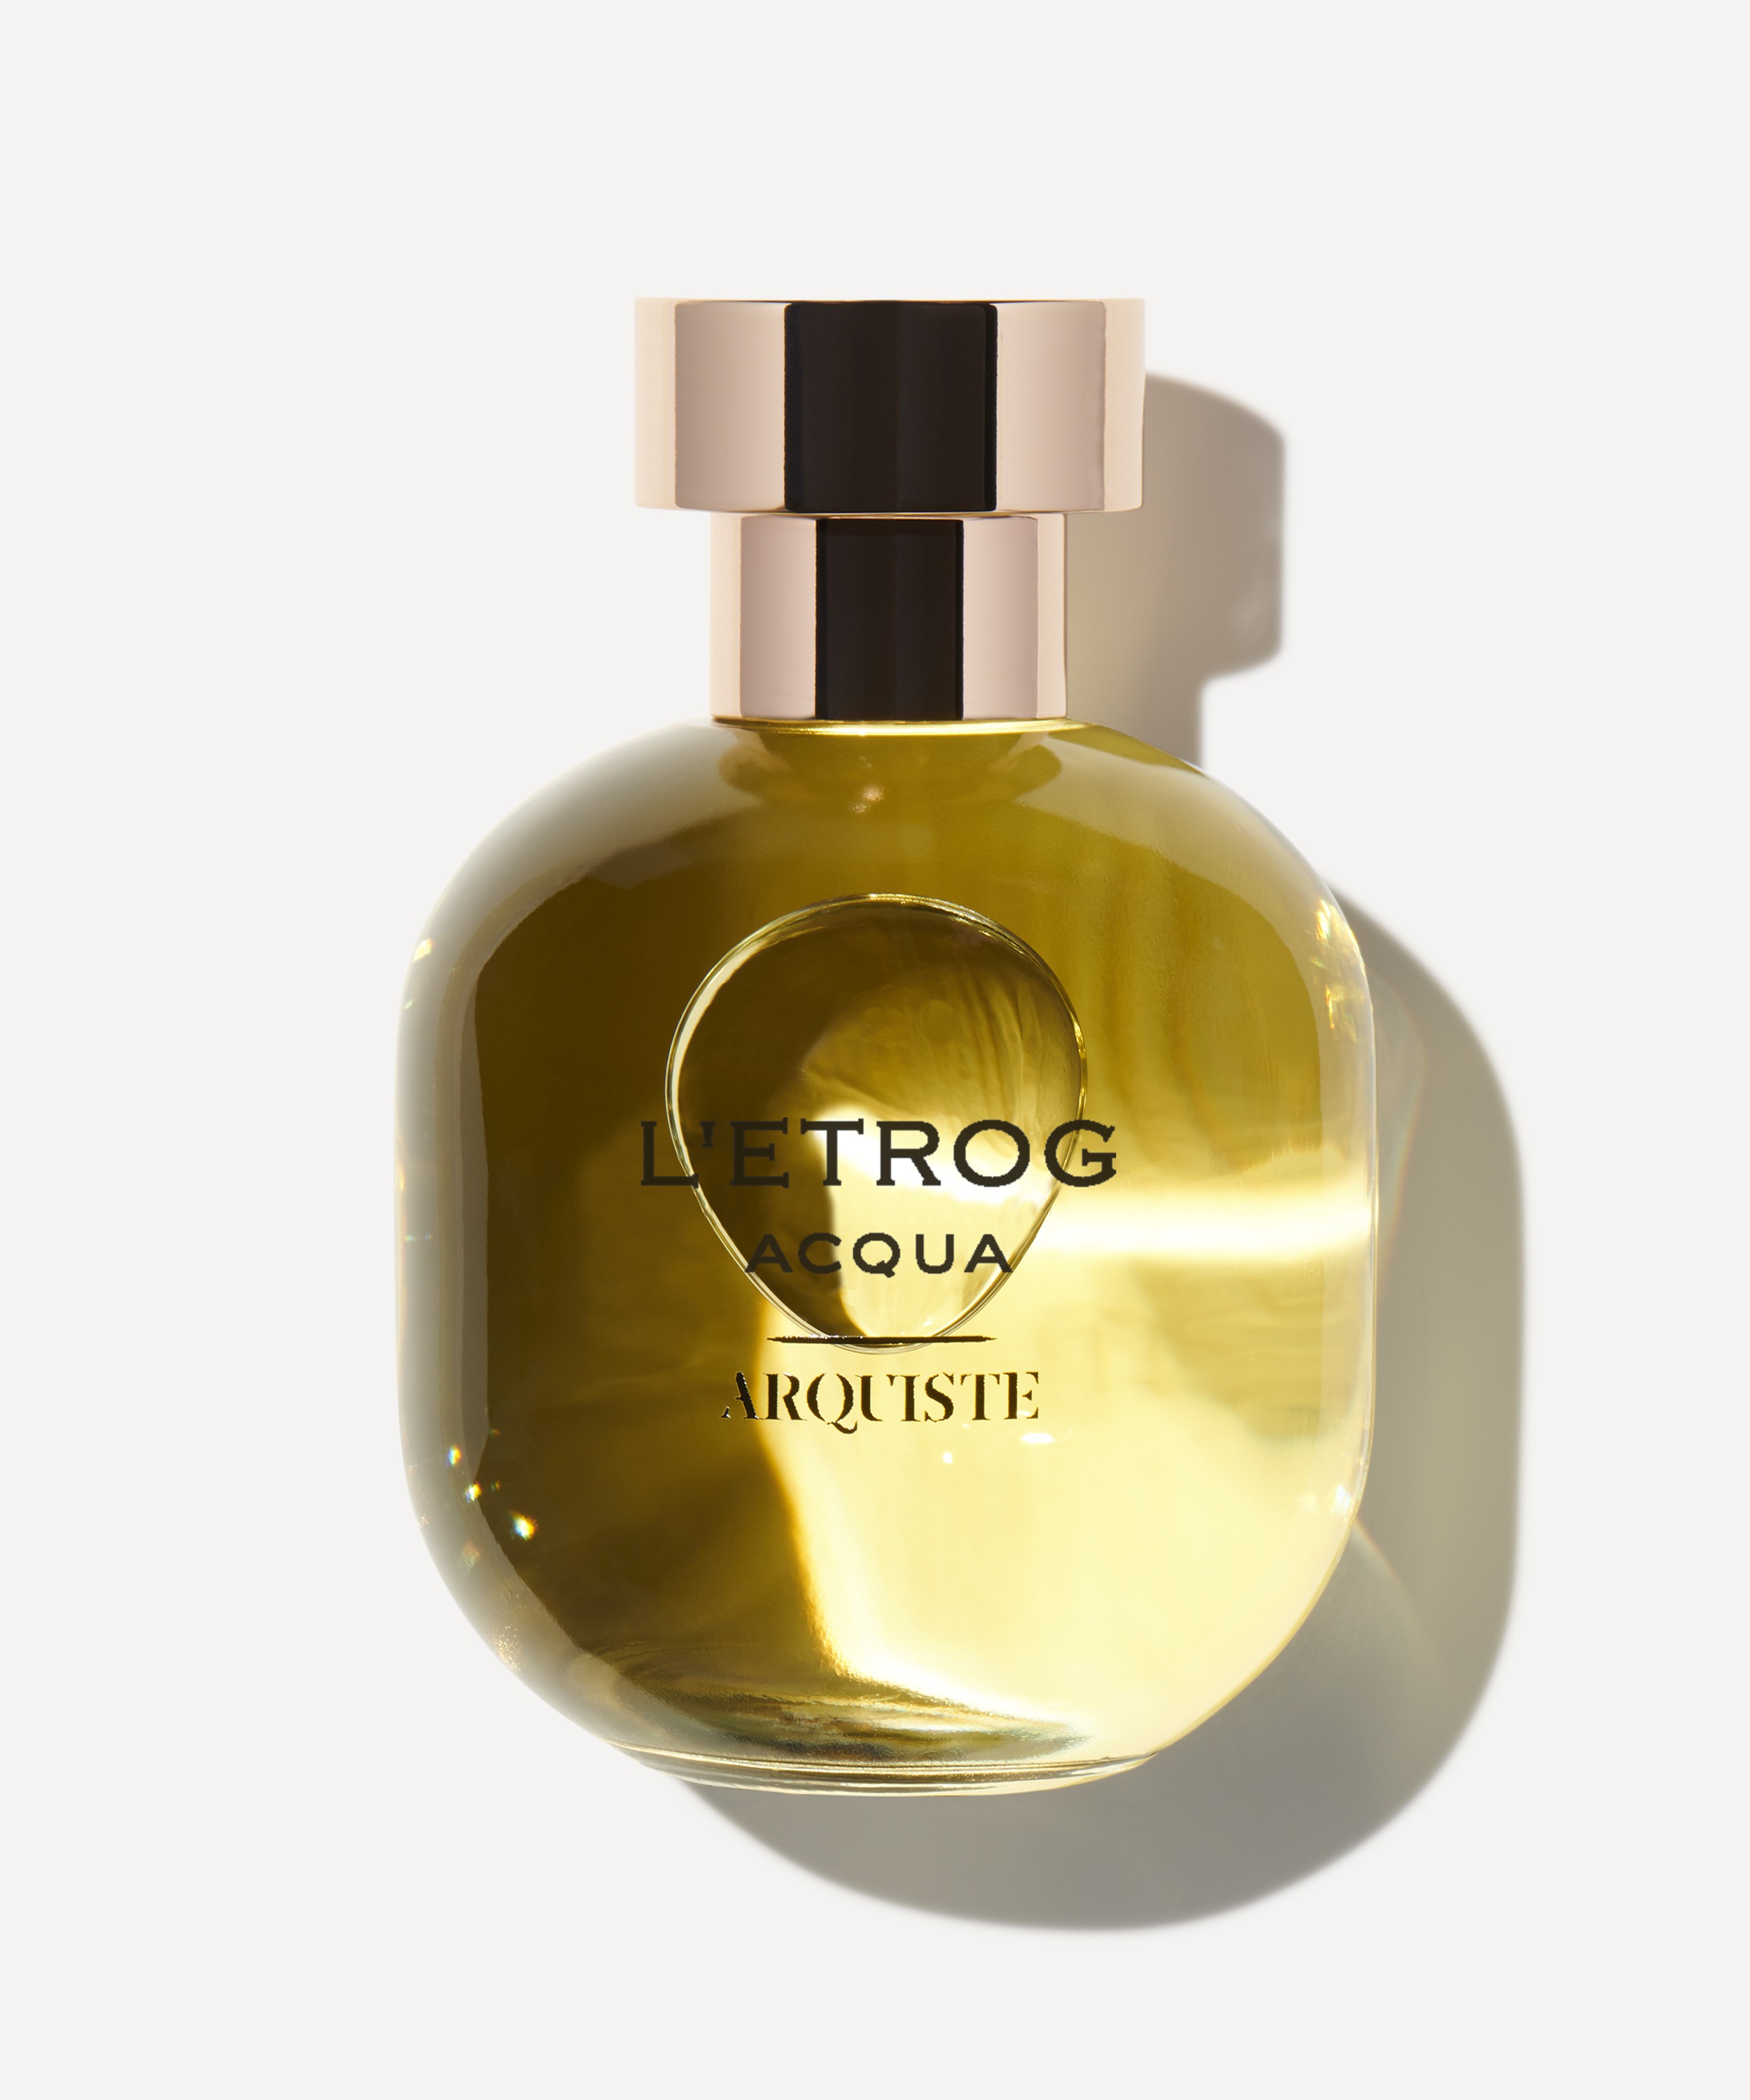 ARQUISTE Parfumeur - L'Etrog Acqua Eau de Parfum 100ml image number 0